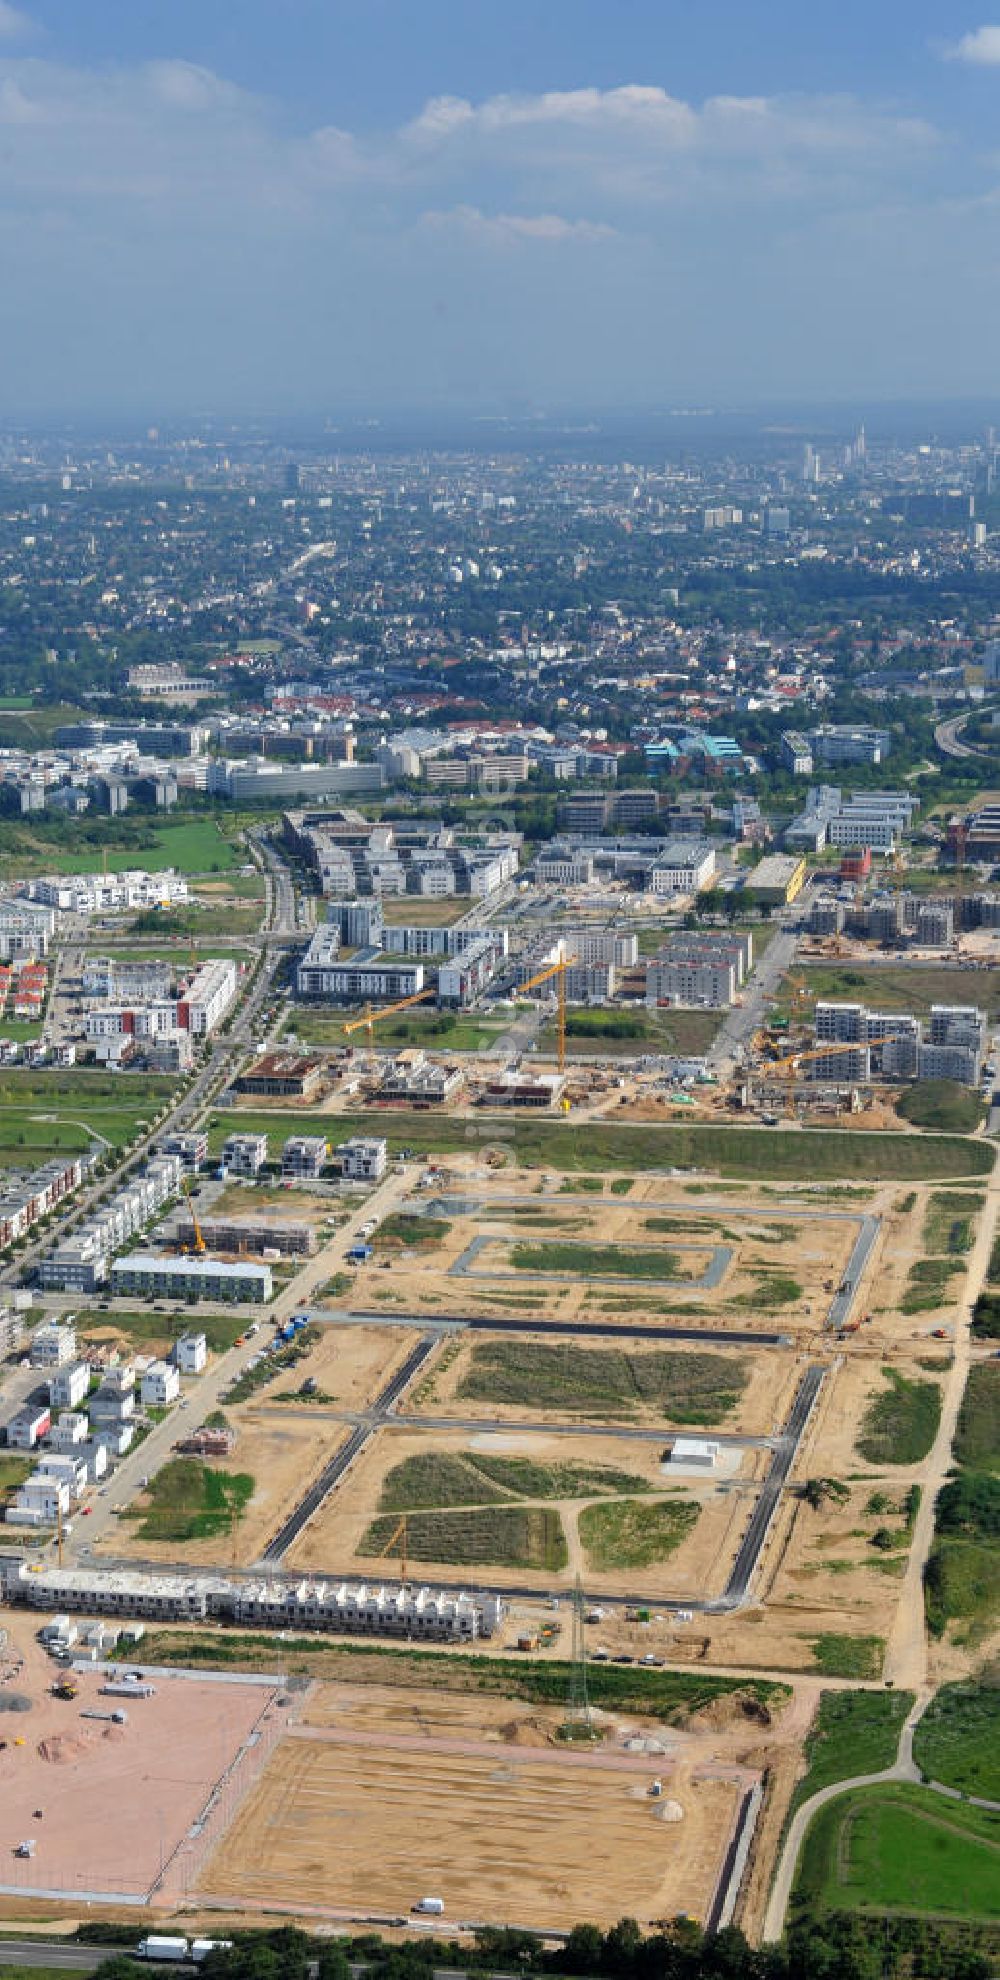 Luftbild Frankfurt am Main - Neubau des Stadtteil Riedberg am Stadtrand von Frankfurt am Main